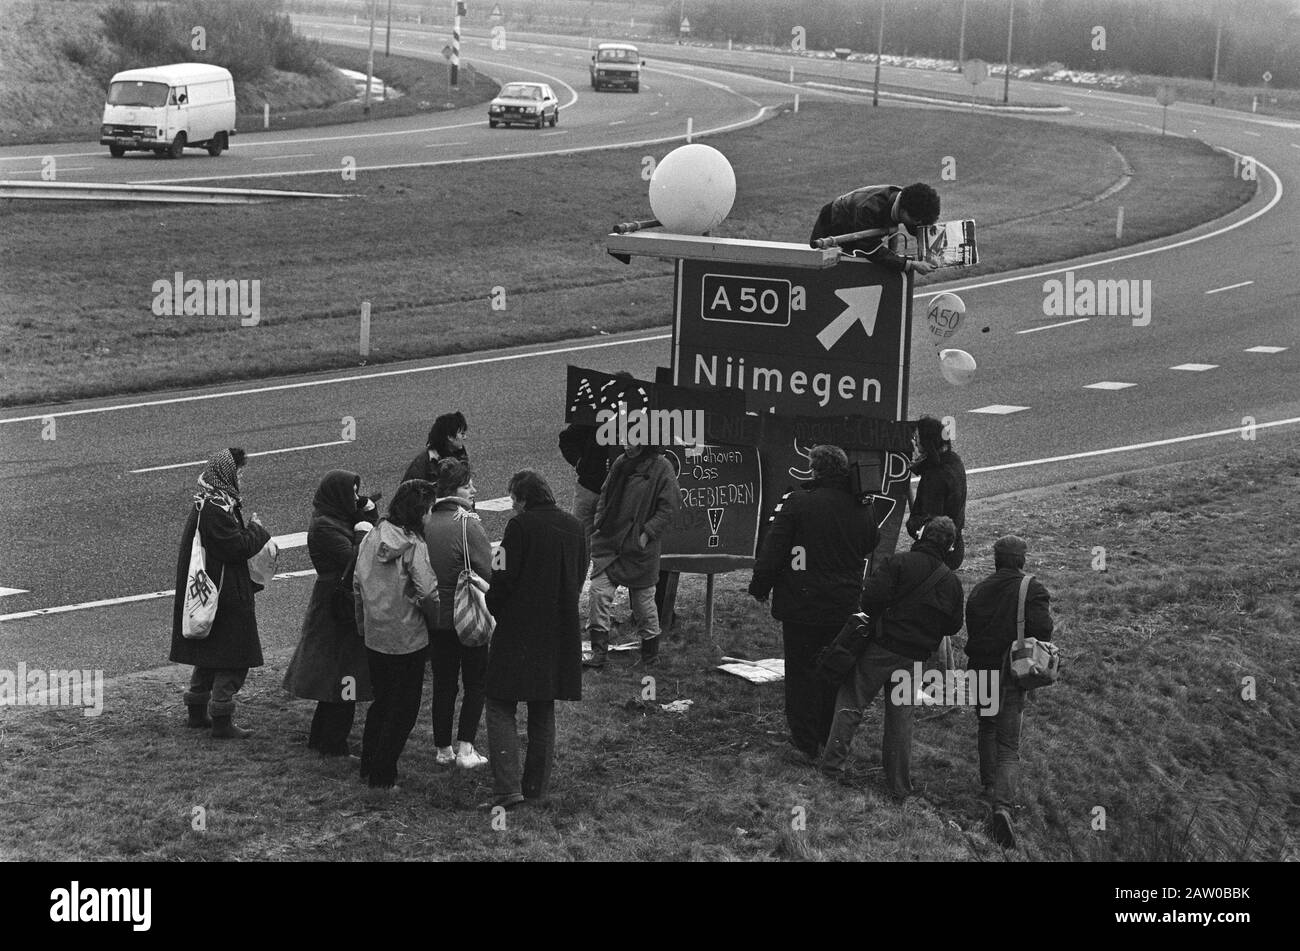 Miembros de la asociación Amigos de la Tierra se manifestaron en Heesch contra la construcción de la A50 Fecha: 31 de enero de 1986 ubicación: Heesch, Brabante Noord Foto de stock